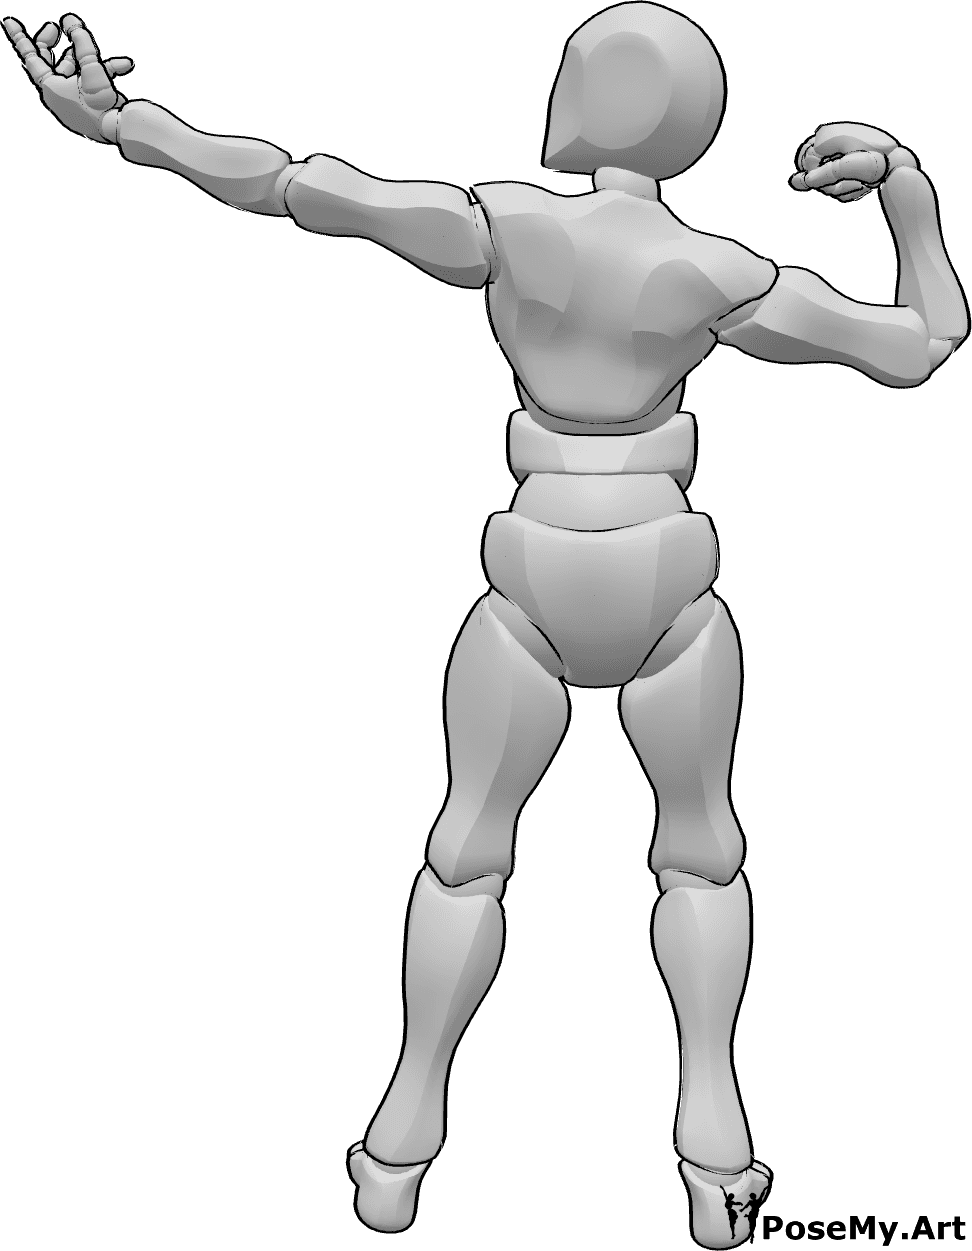 Référence des poses- Pose des muscles masculins - Homme montrant ses muscles pose